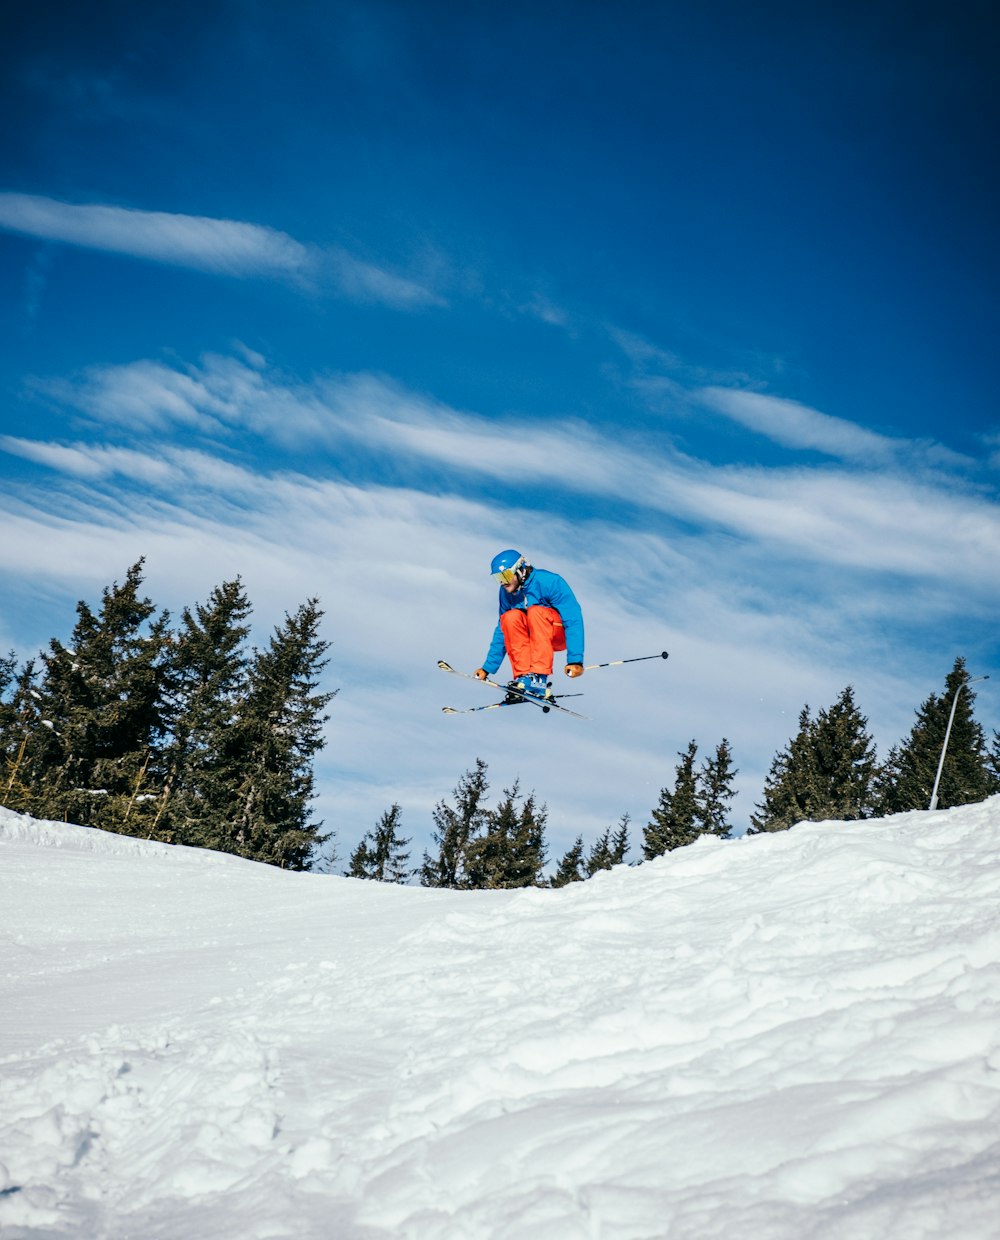 personne skiant sur un terrain couvert de neige pendant la journée